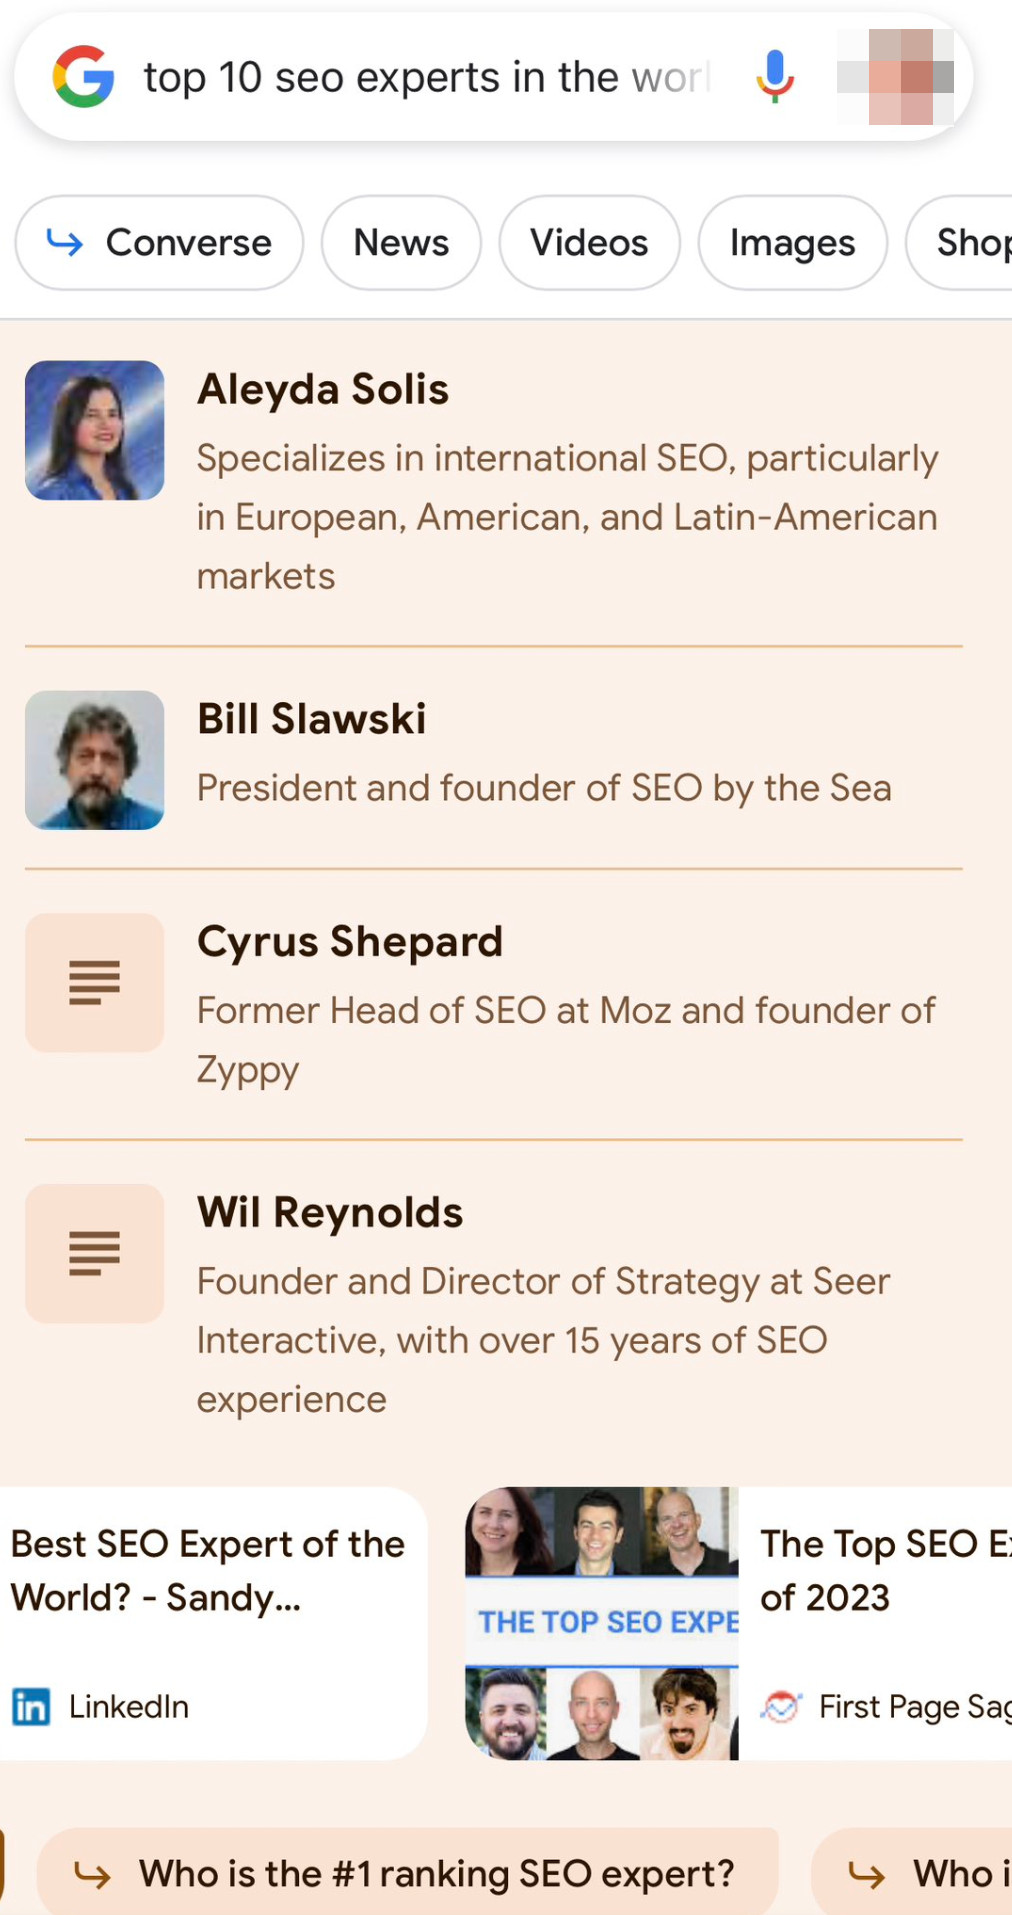 Google SGE: Welches sind die weltweit besten SEO-Experten?